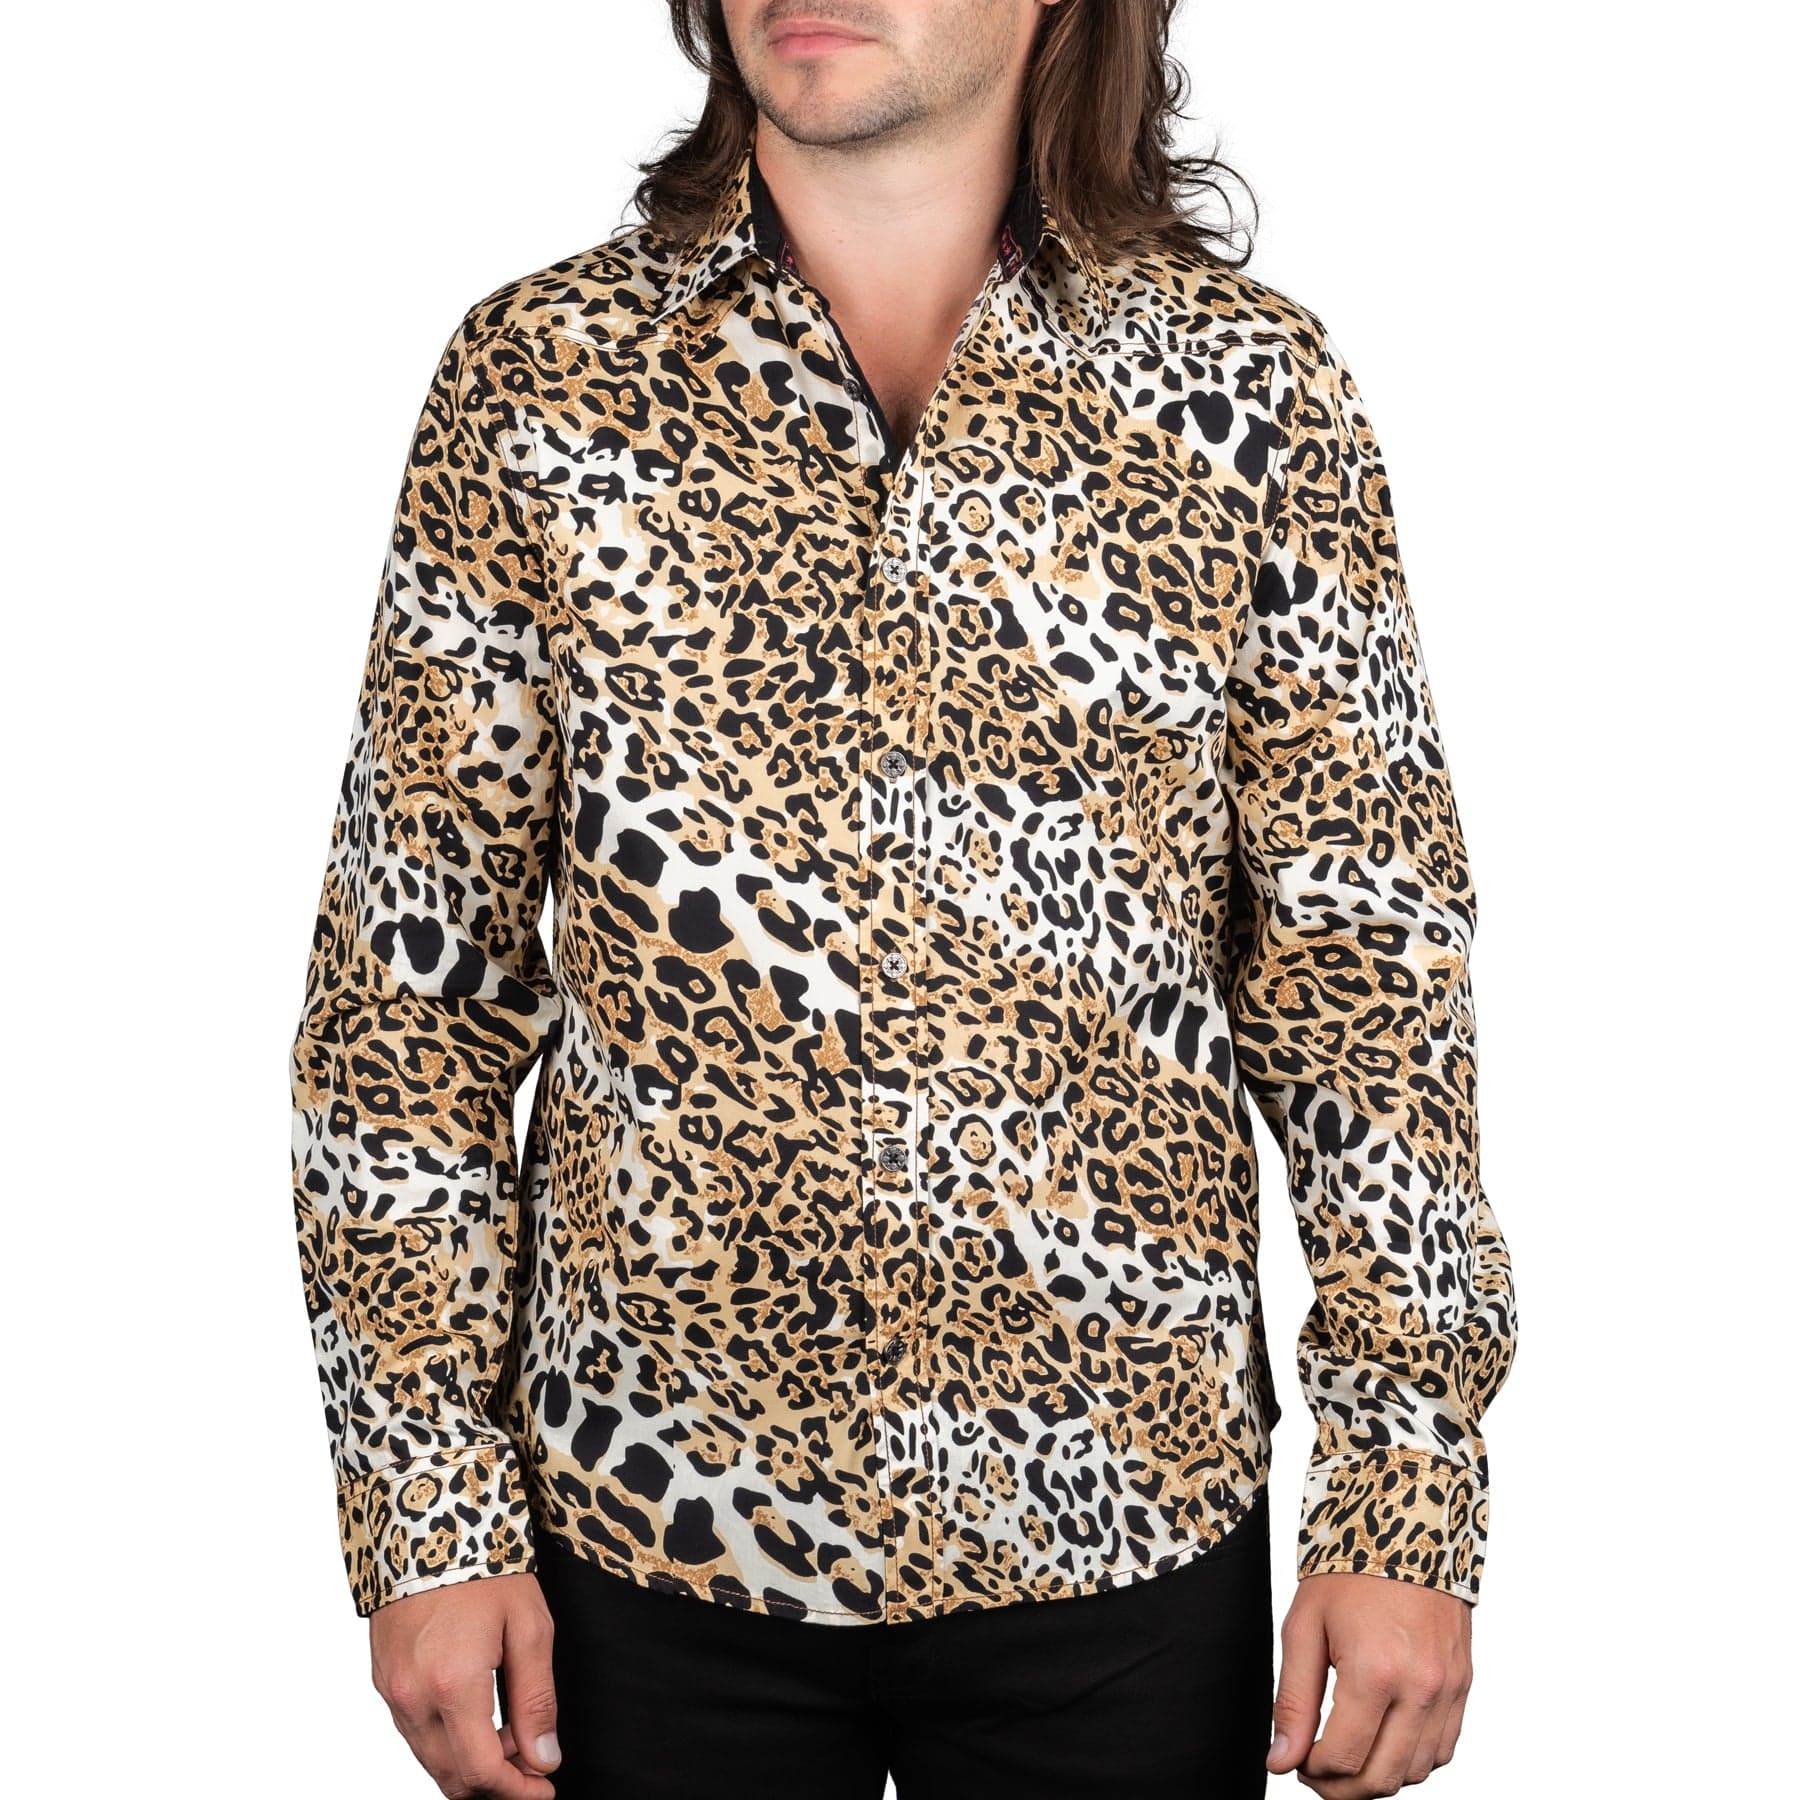 Wornstar Clothing Mens Shirt. Button Down Long Sleeve Leopard Shirt